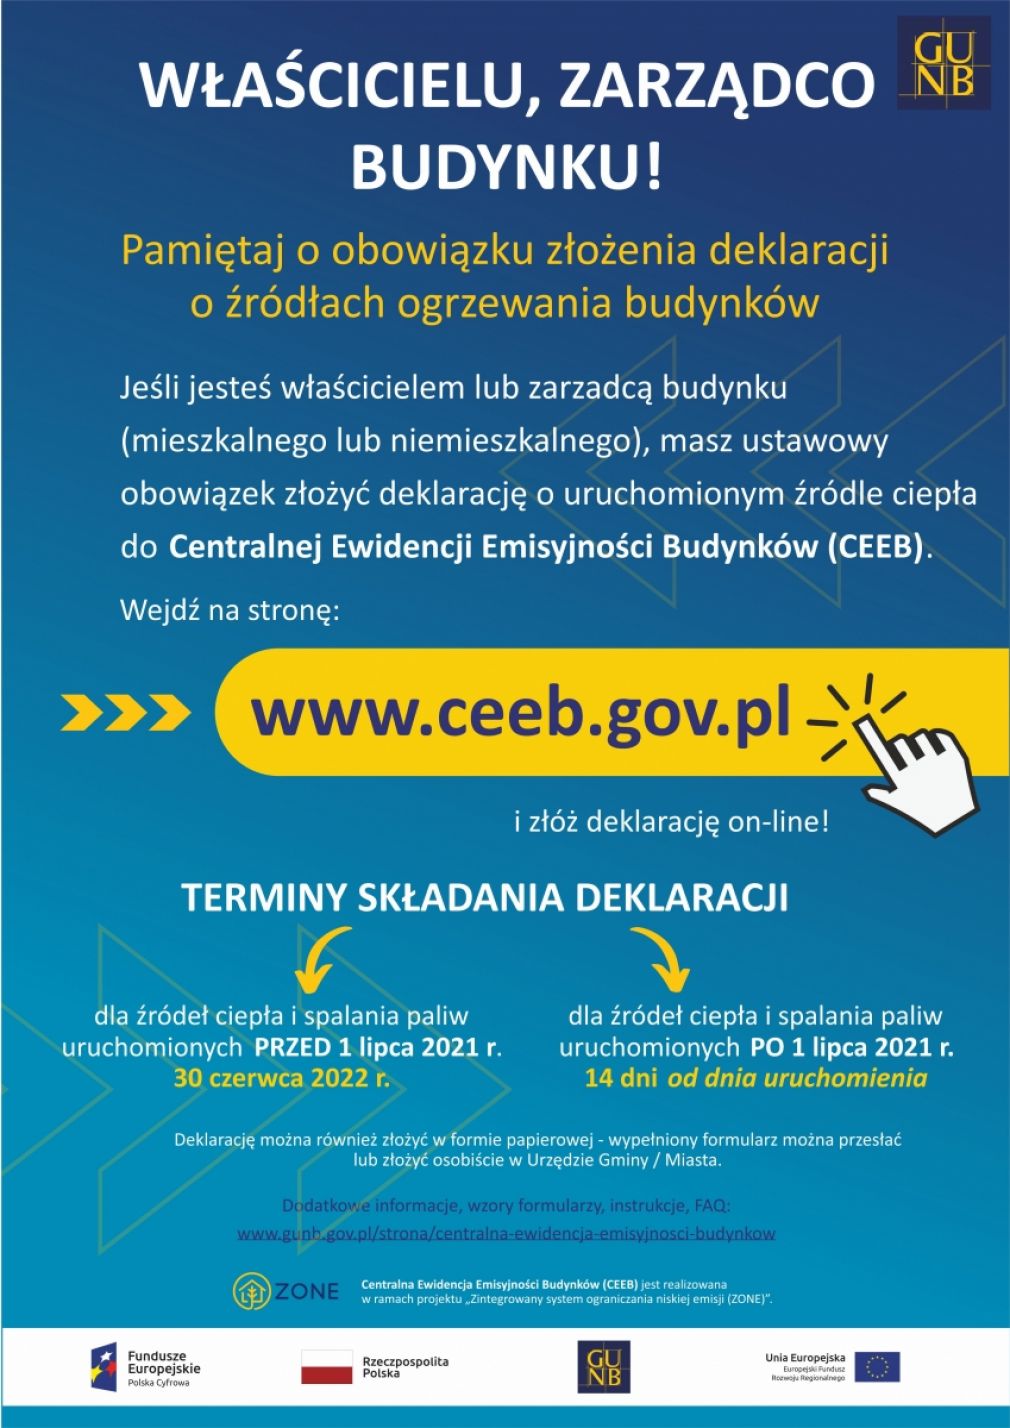 Obowiązek zgłoszenia źródła ogrzewania do Centralnej Ewidencji Emisyjności Budynków (CEEB)